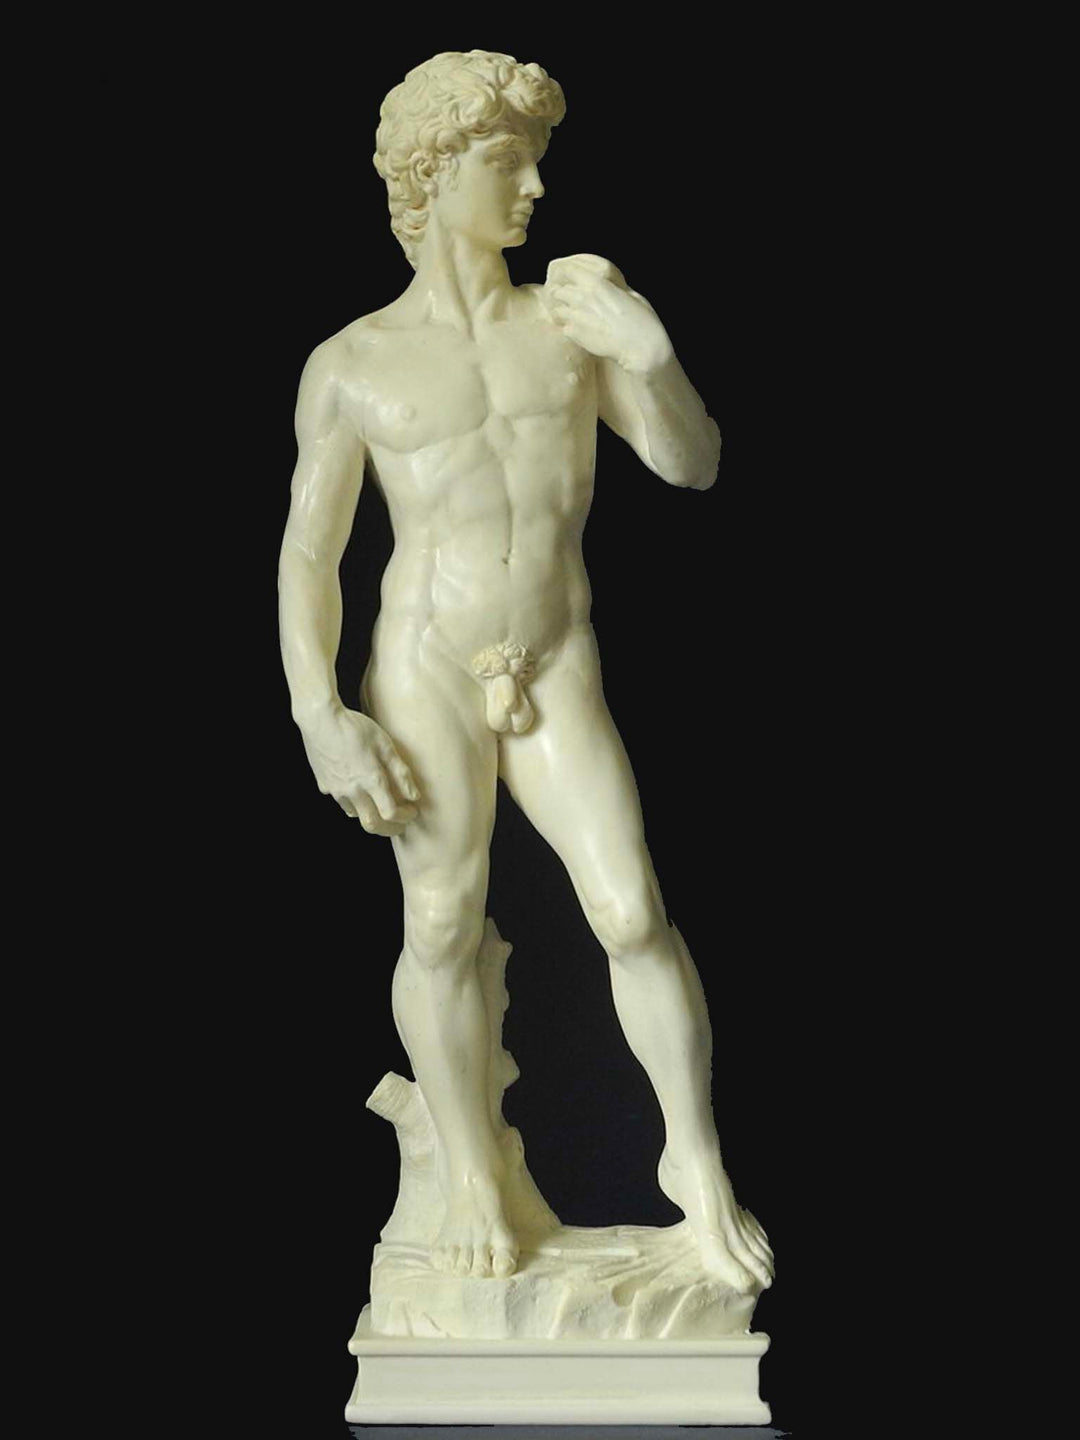 David (Michelangelo) Sculpture